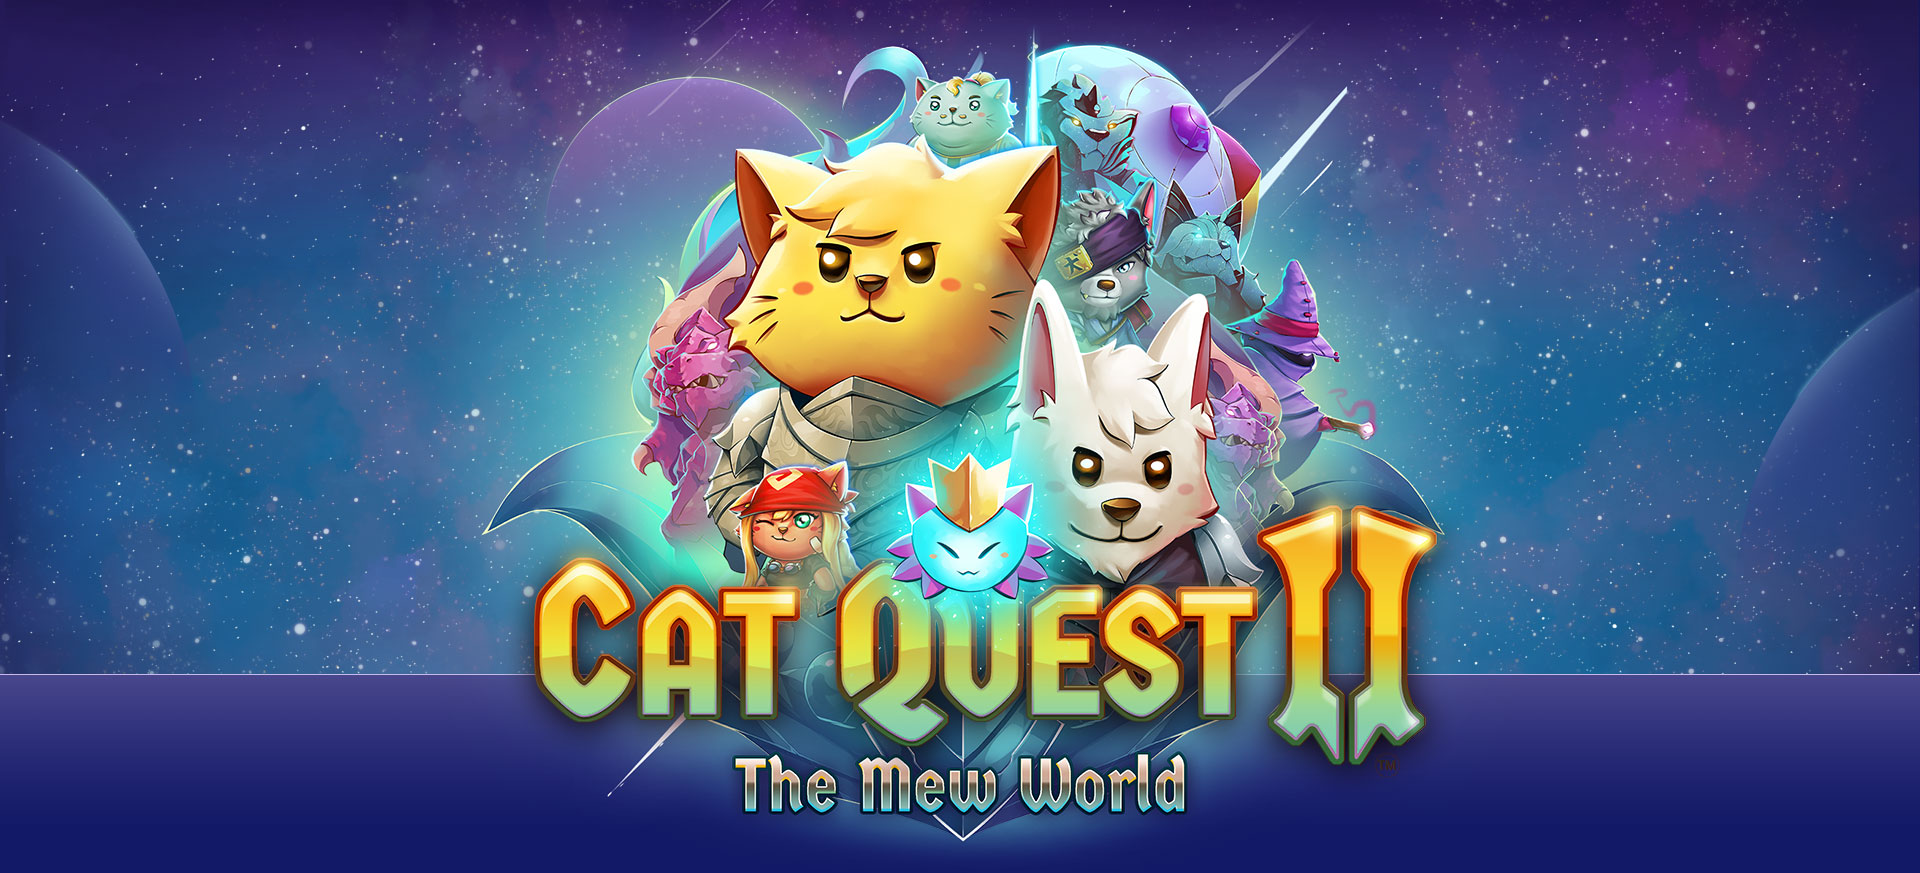 Cat games 2. Кэт квест 2. Игра Cat Quest. Элиус Cat Quest 2. Кот квест.